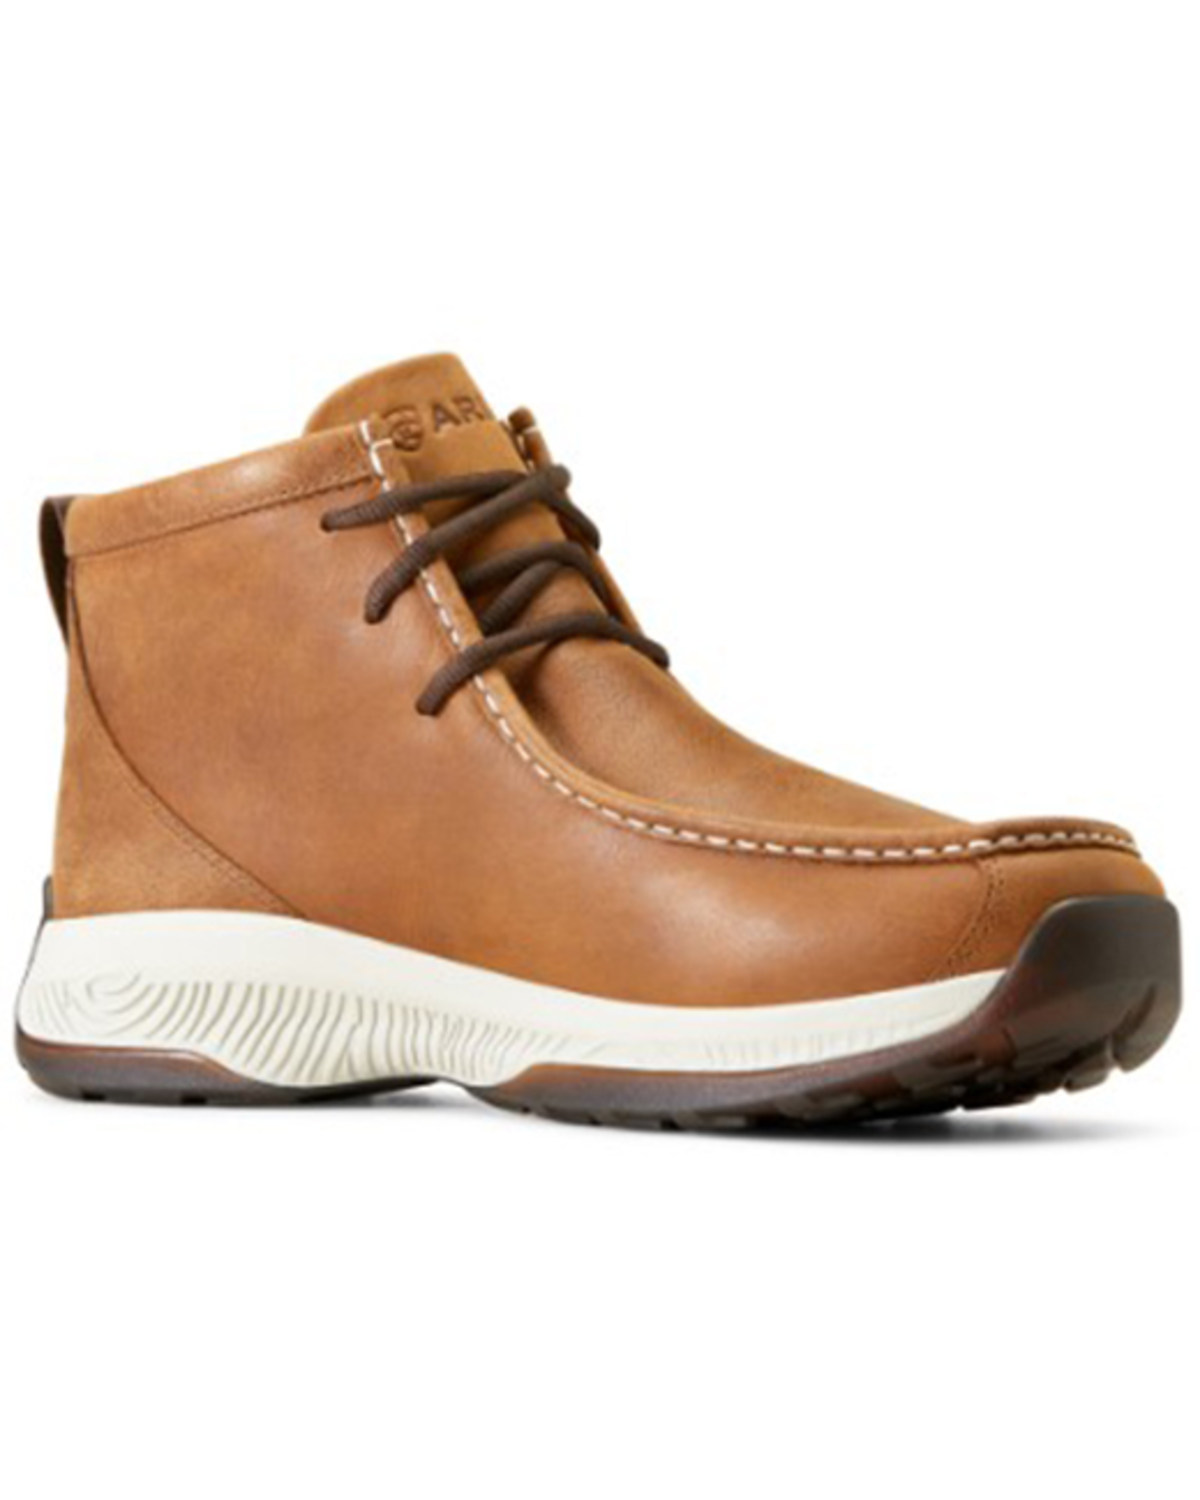 Ariat Men's Spitfire All Terrain Casual Shoes - Moc Toe